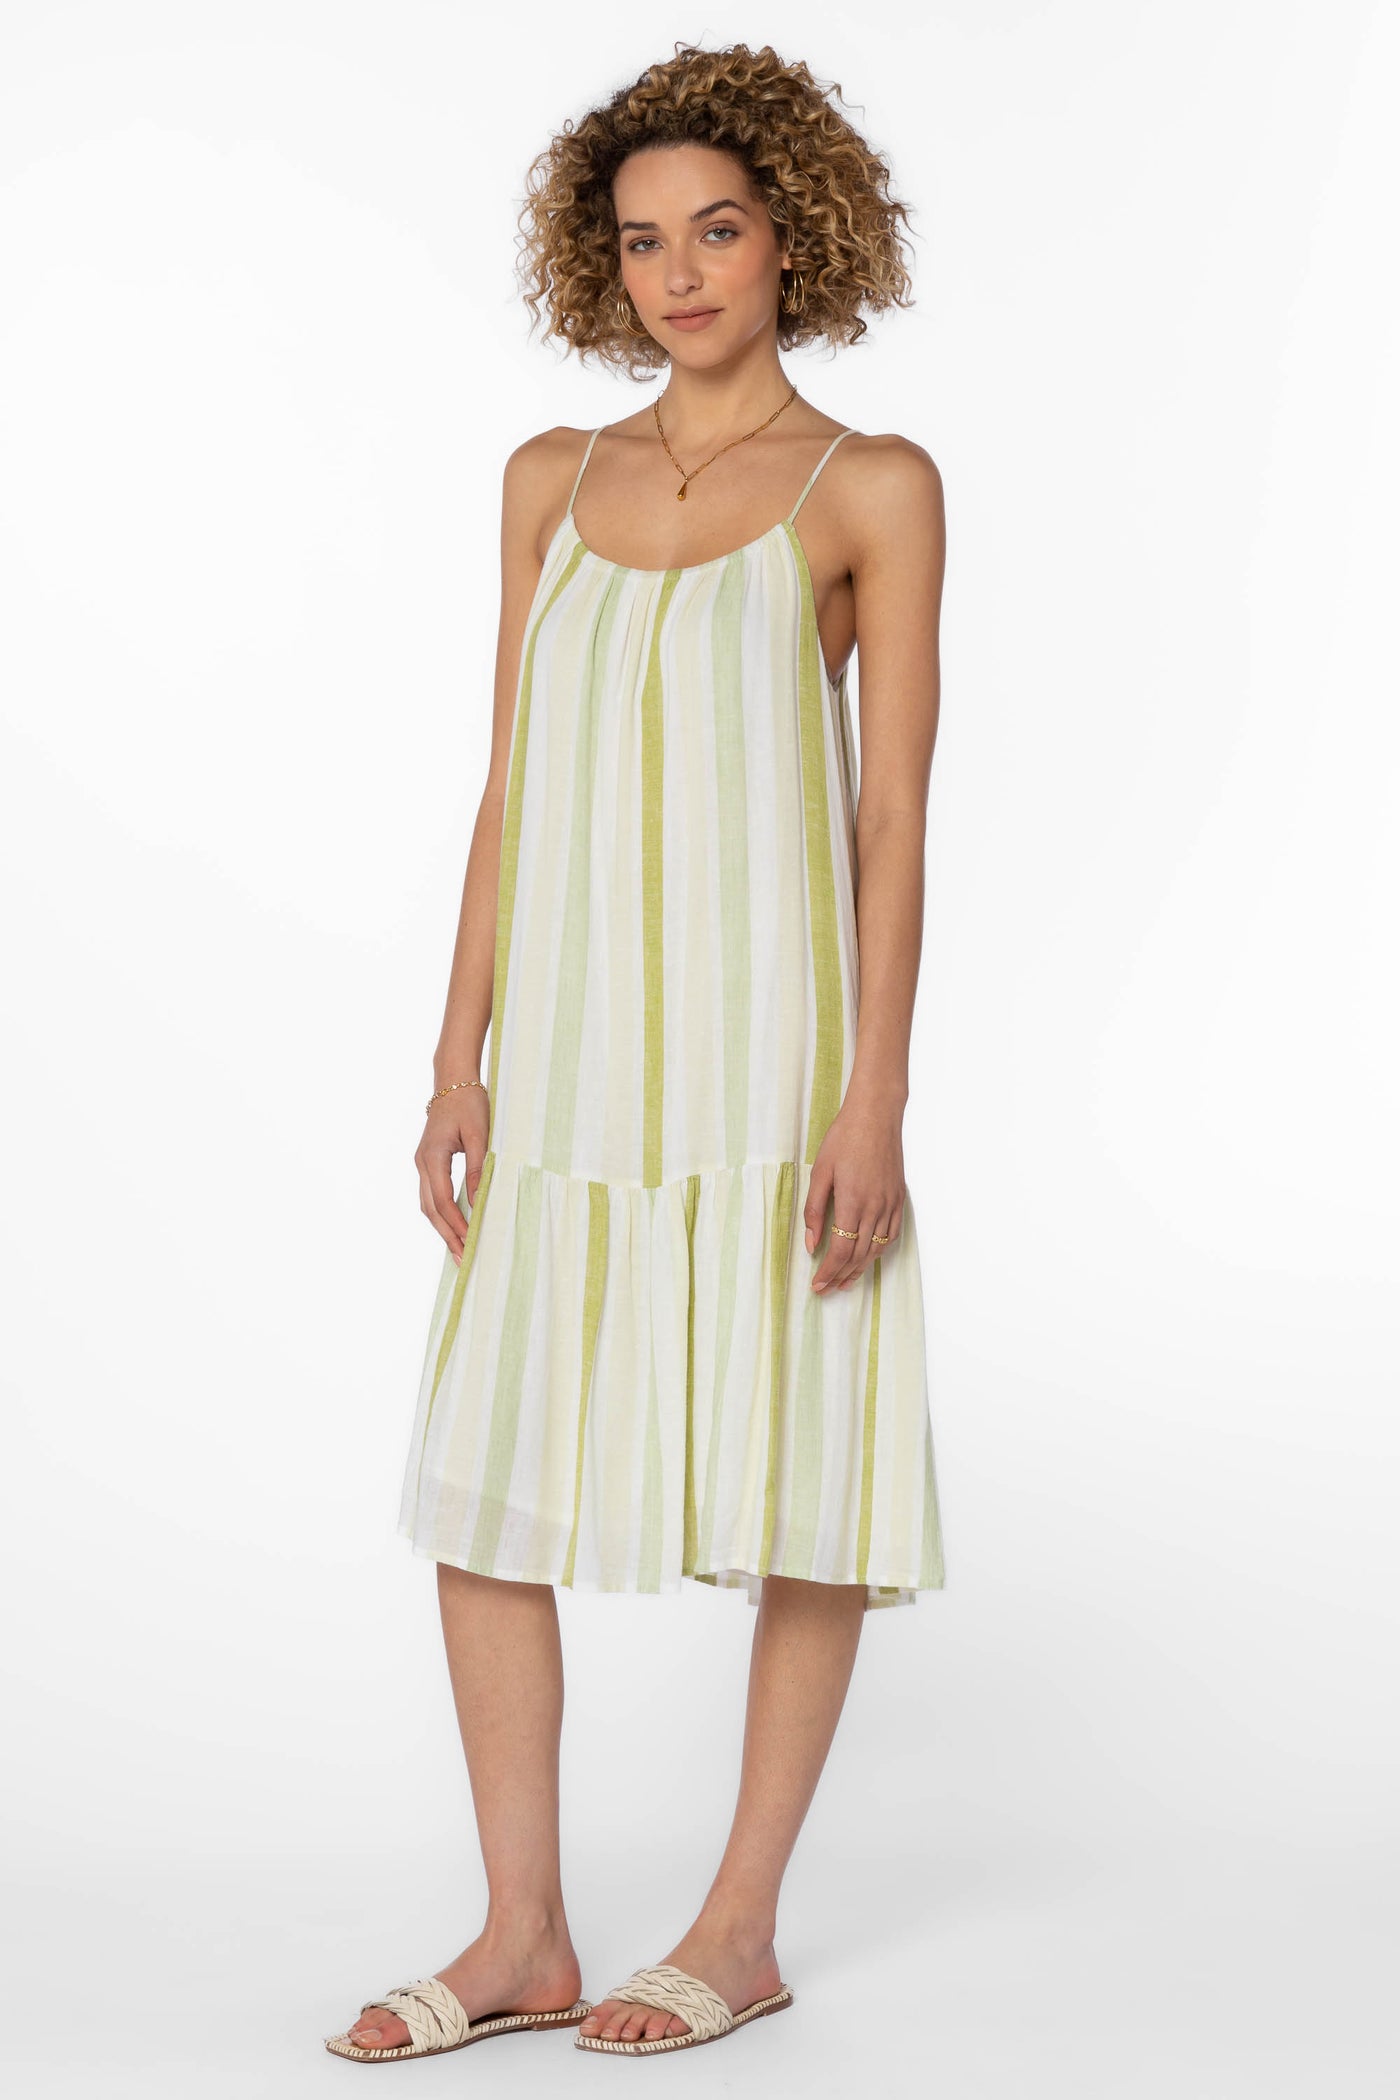 Amelie Green Stripe Dress - Dresses - Velvet Heart Clothing